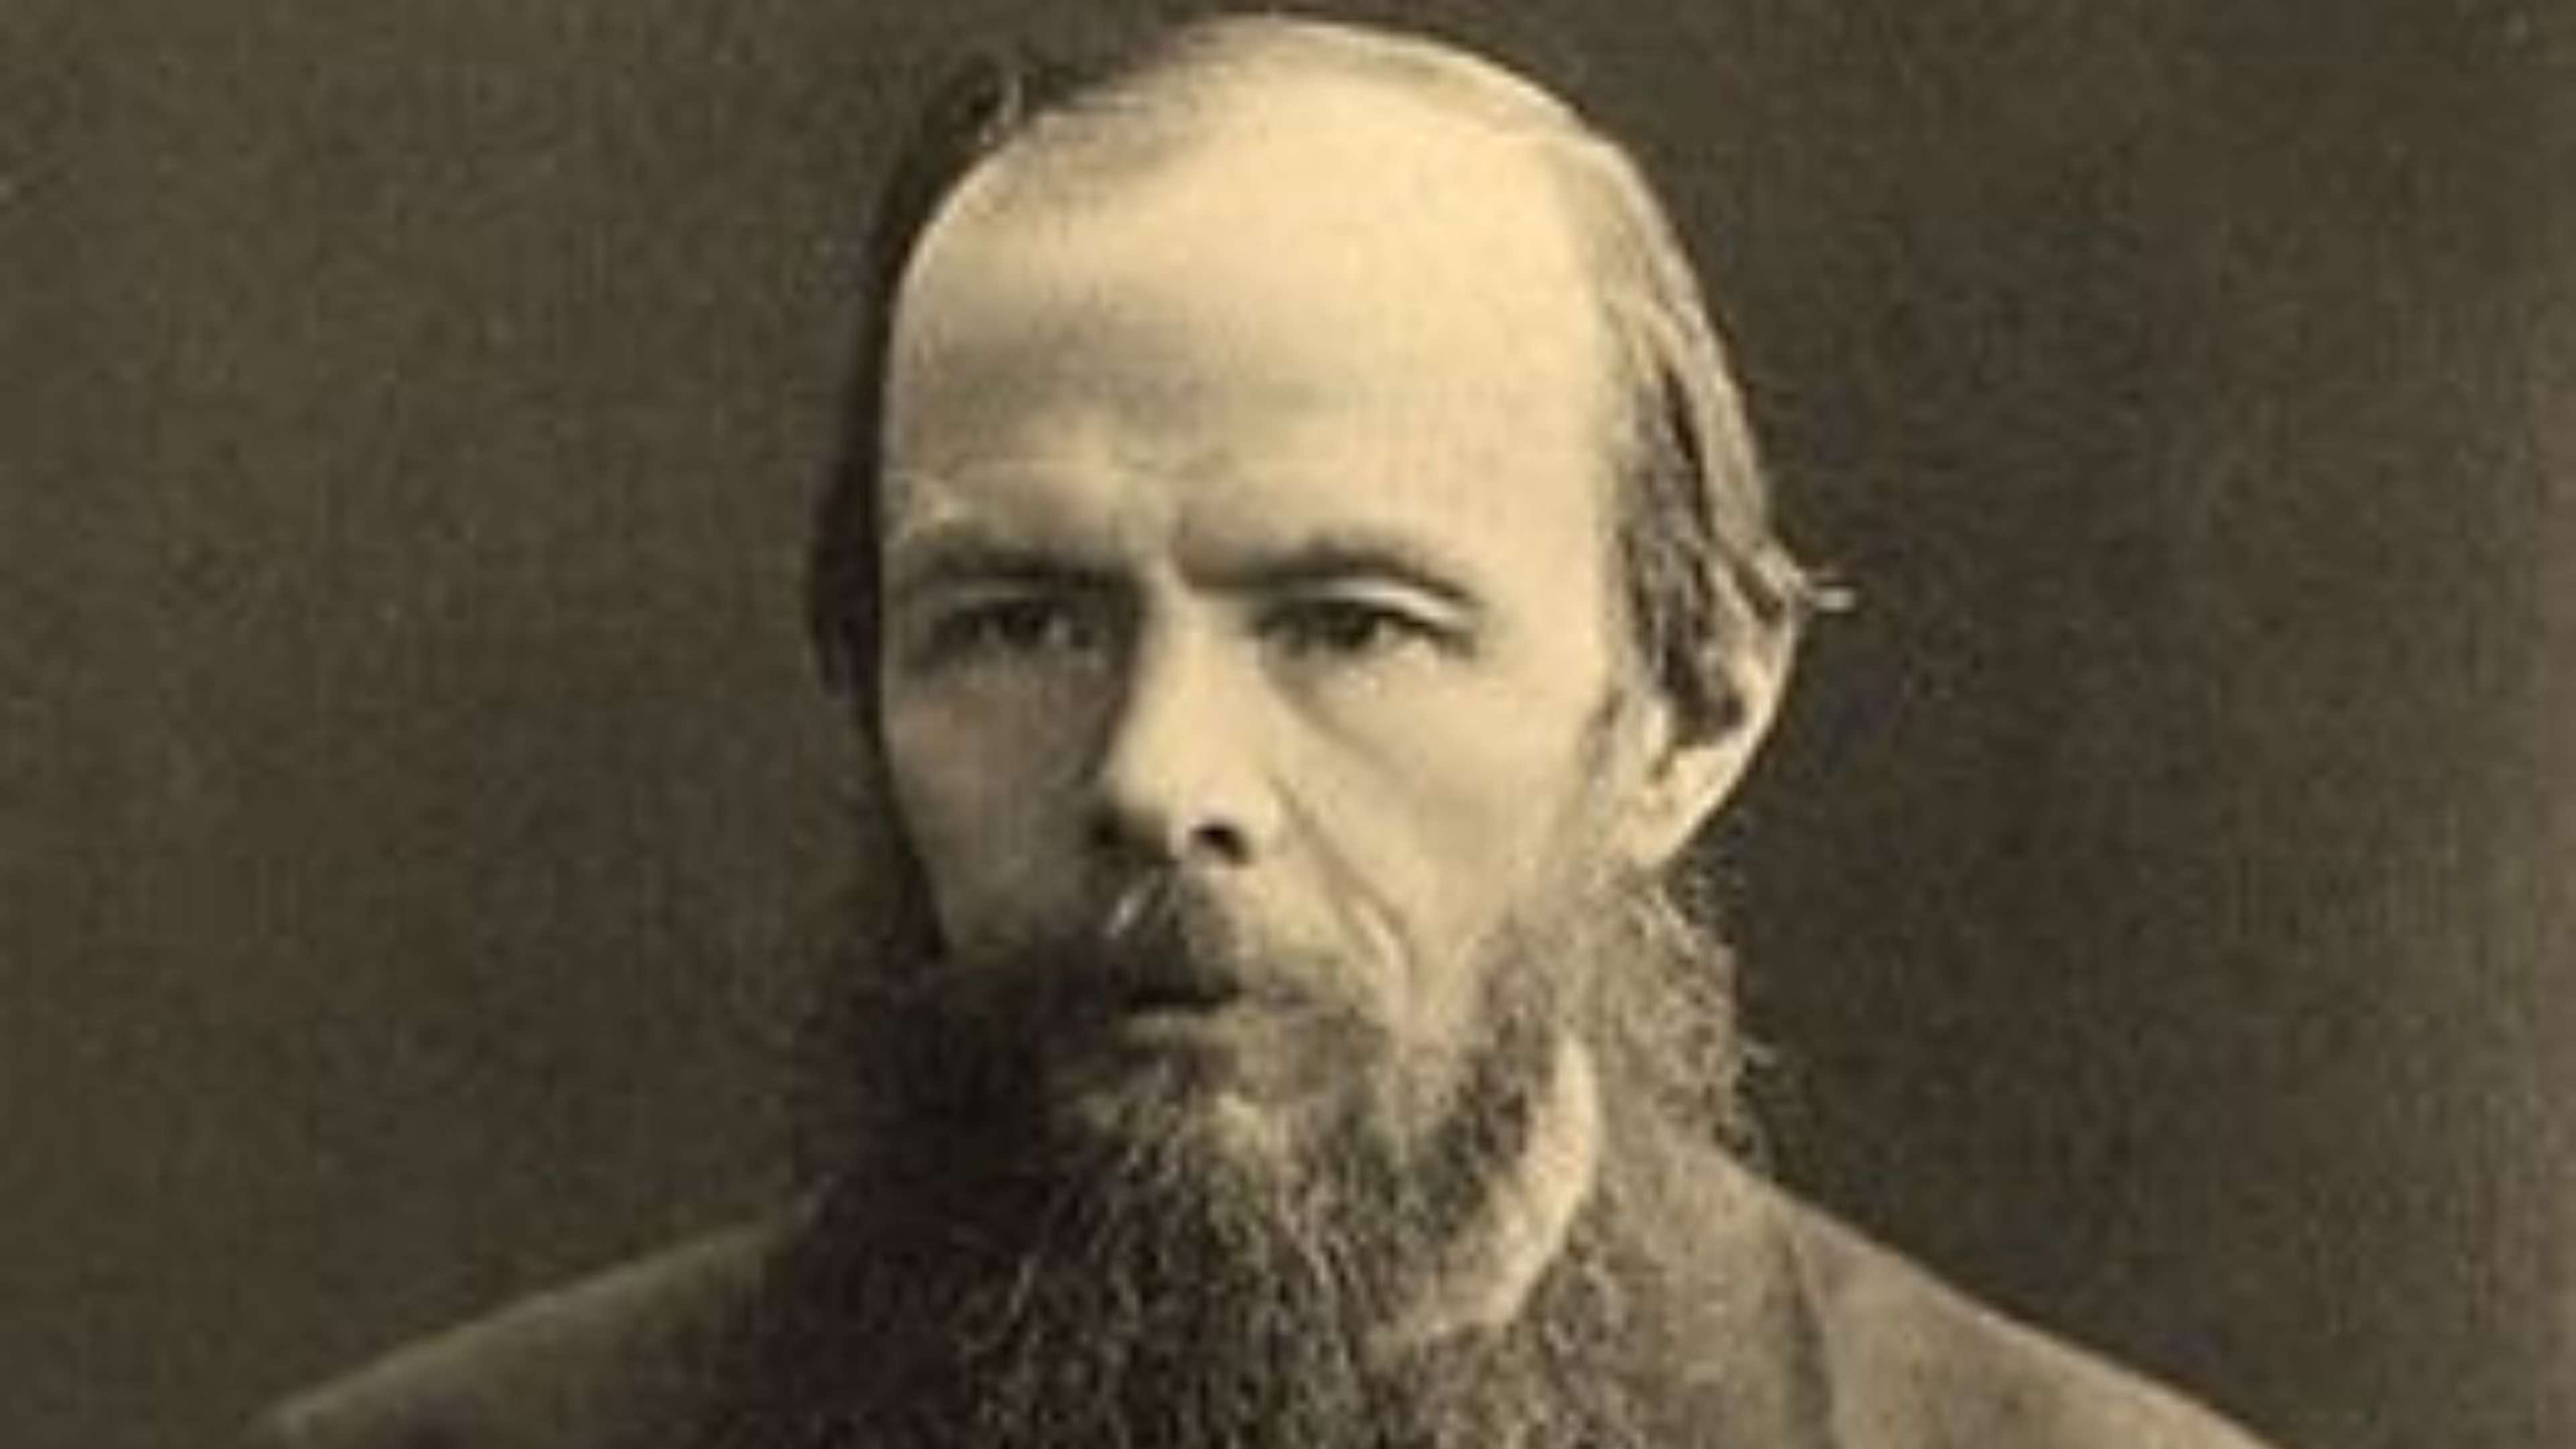 Avez-vous lu  "L'idiot" de Dostoïevski ? Si oui, qu'en avez-vous pensé ?